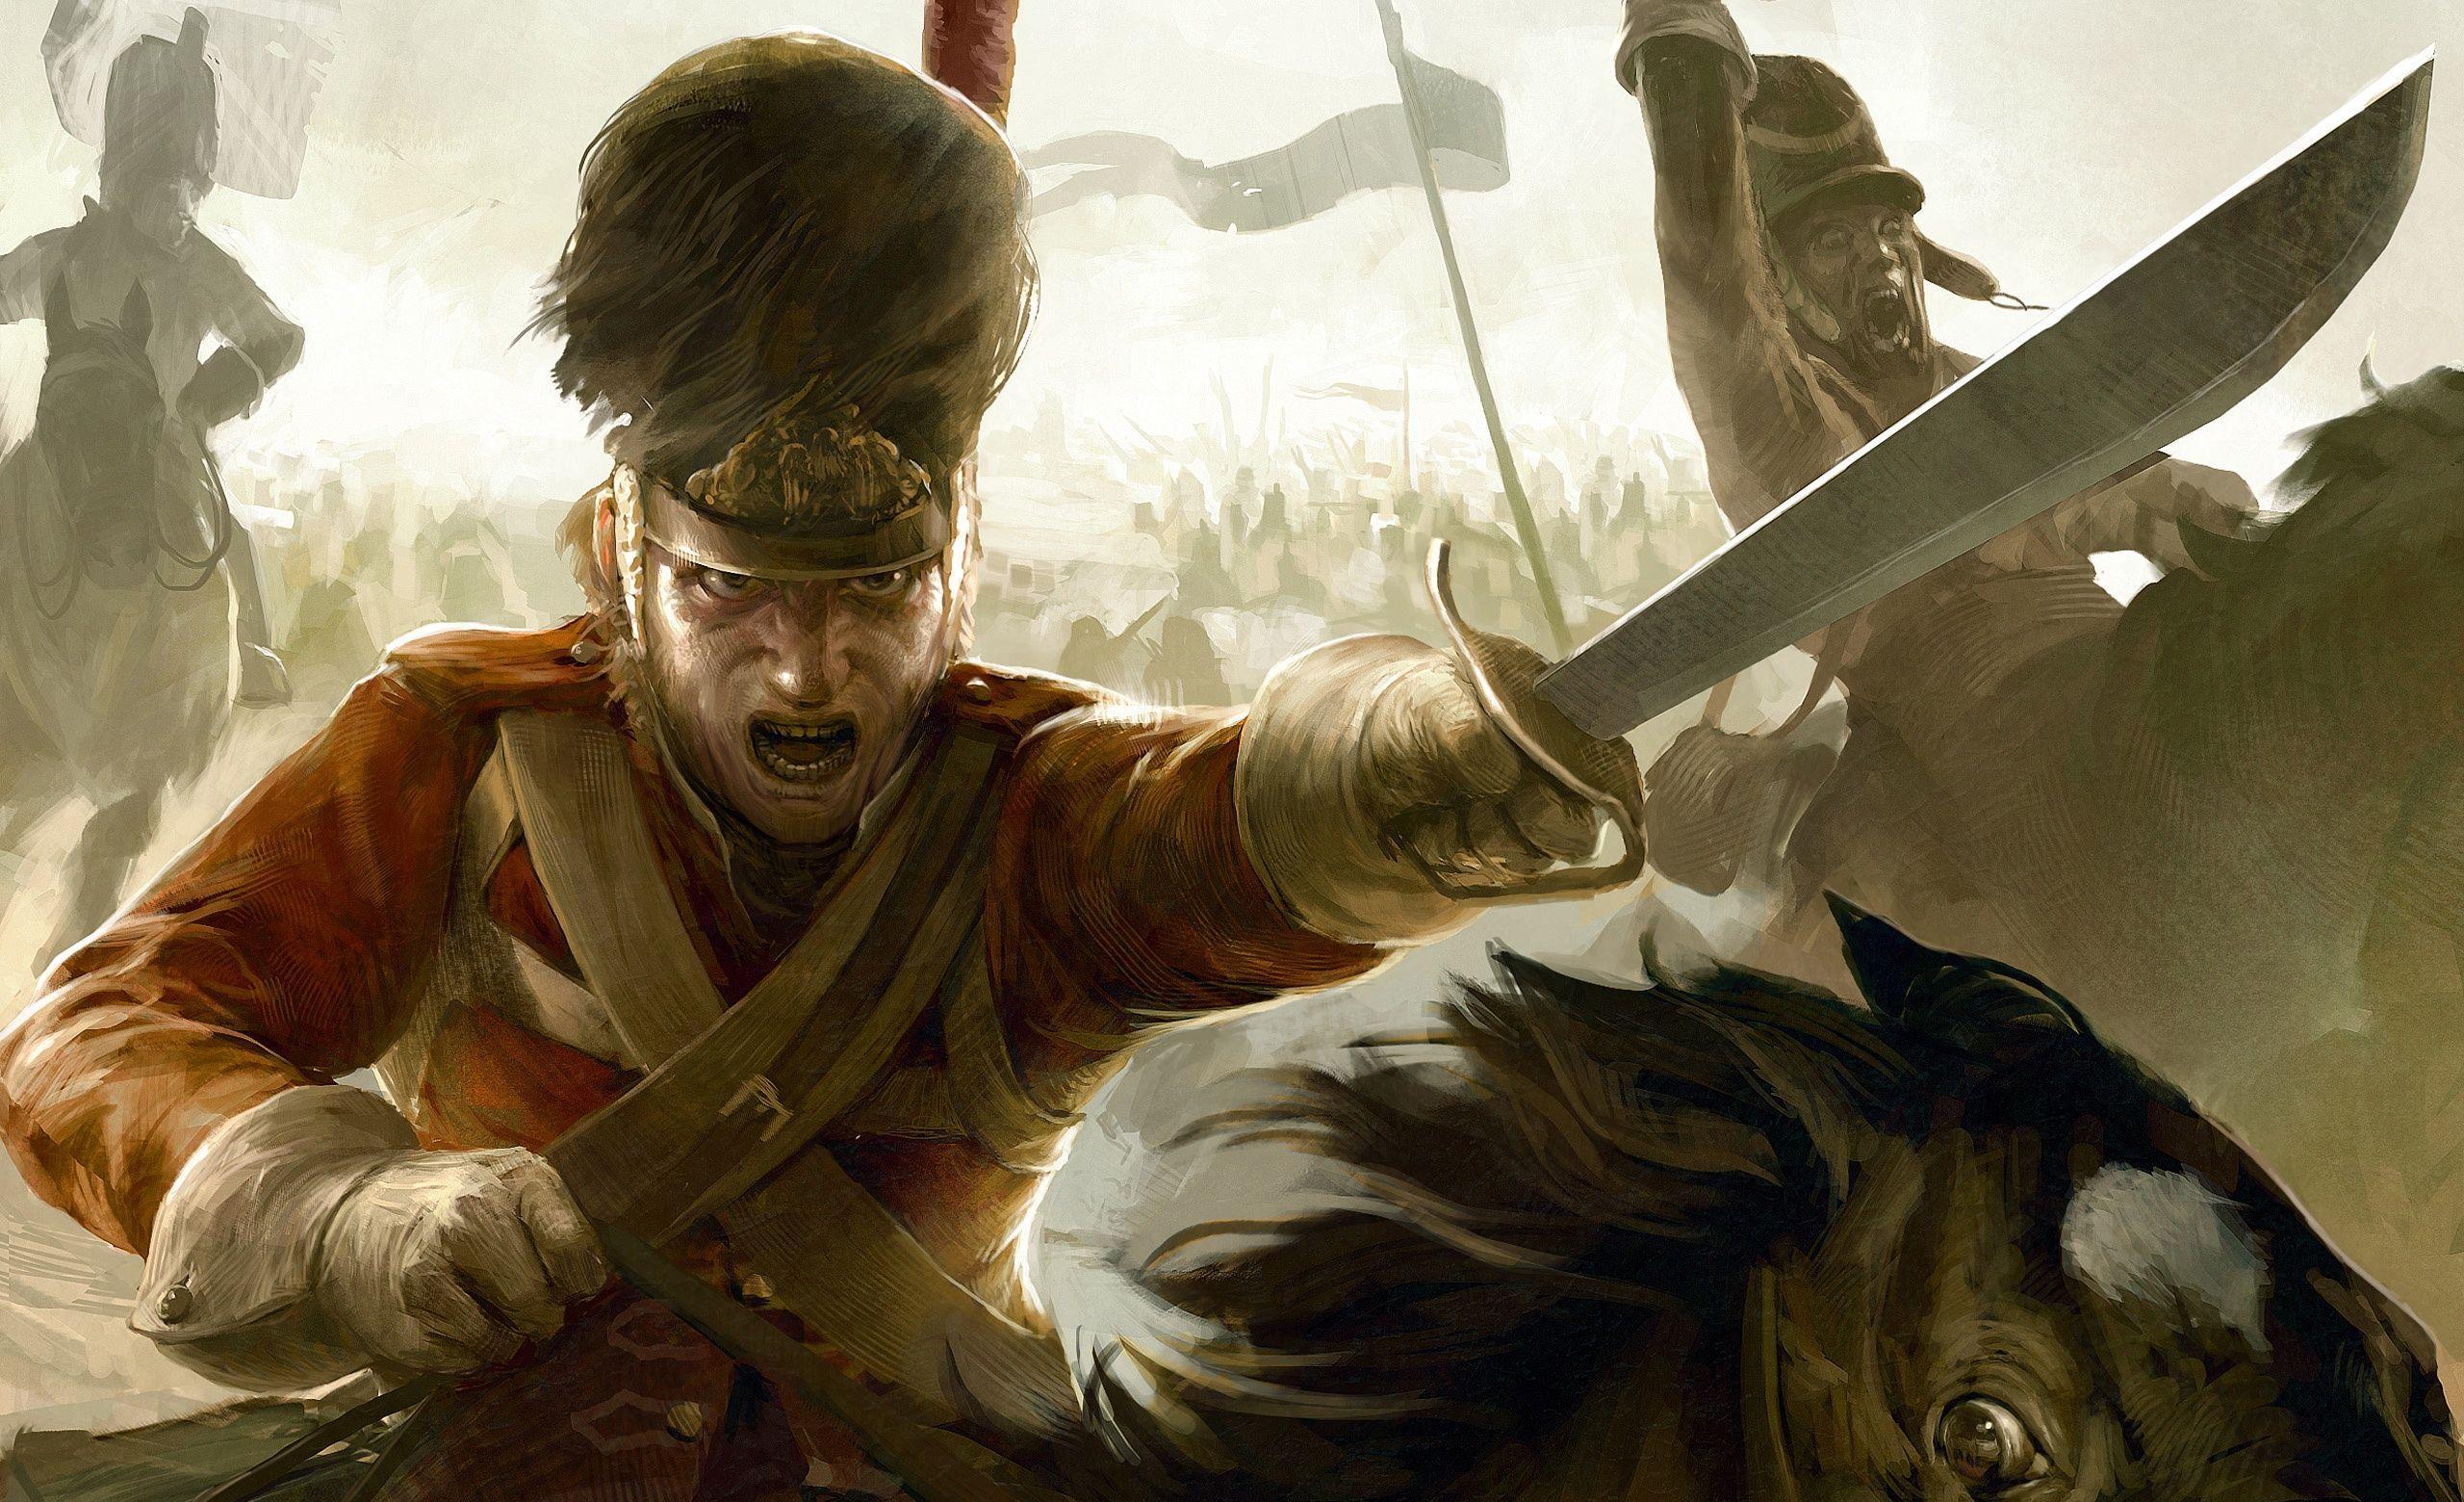 Napoleon: Total War HD Wallpaper